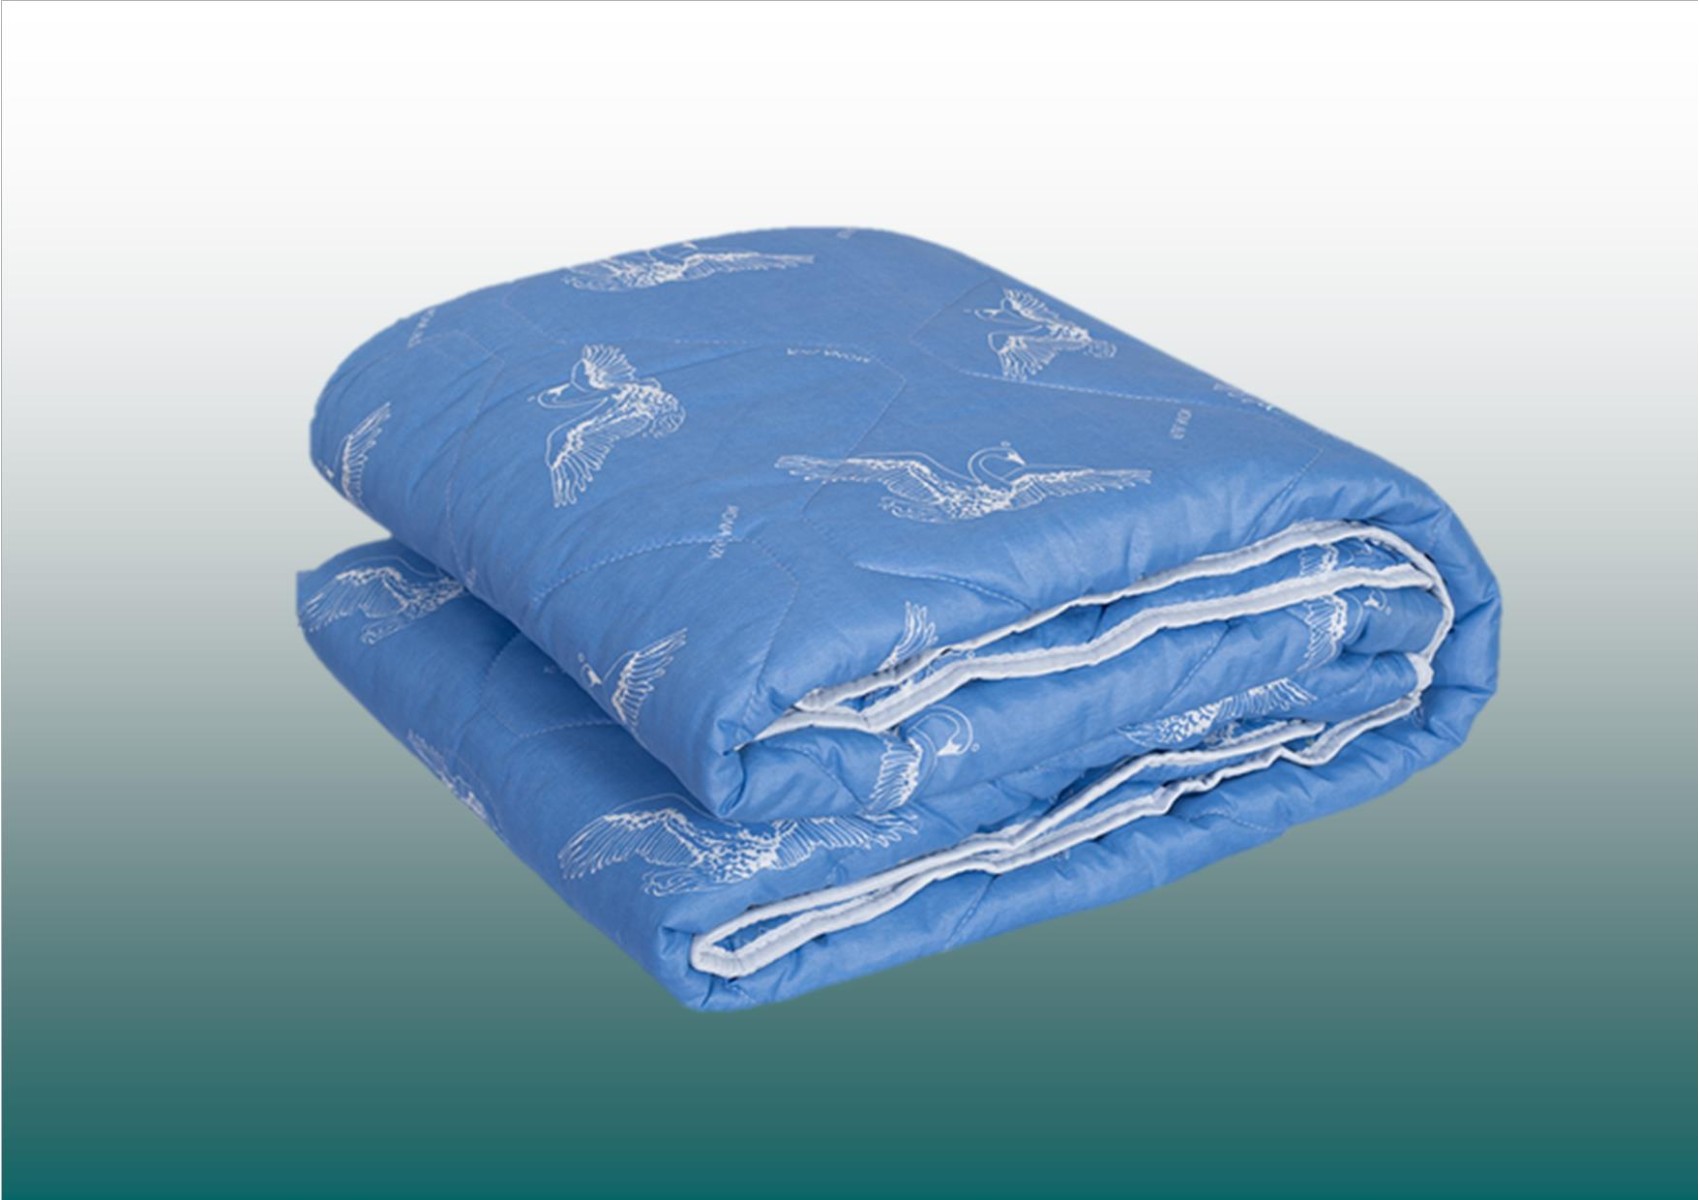 Одеяло стеганное, плотность 150г/м², ЛЕТО чехол микрофибра